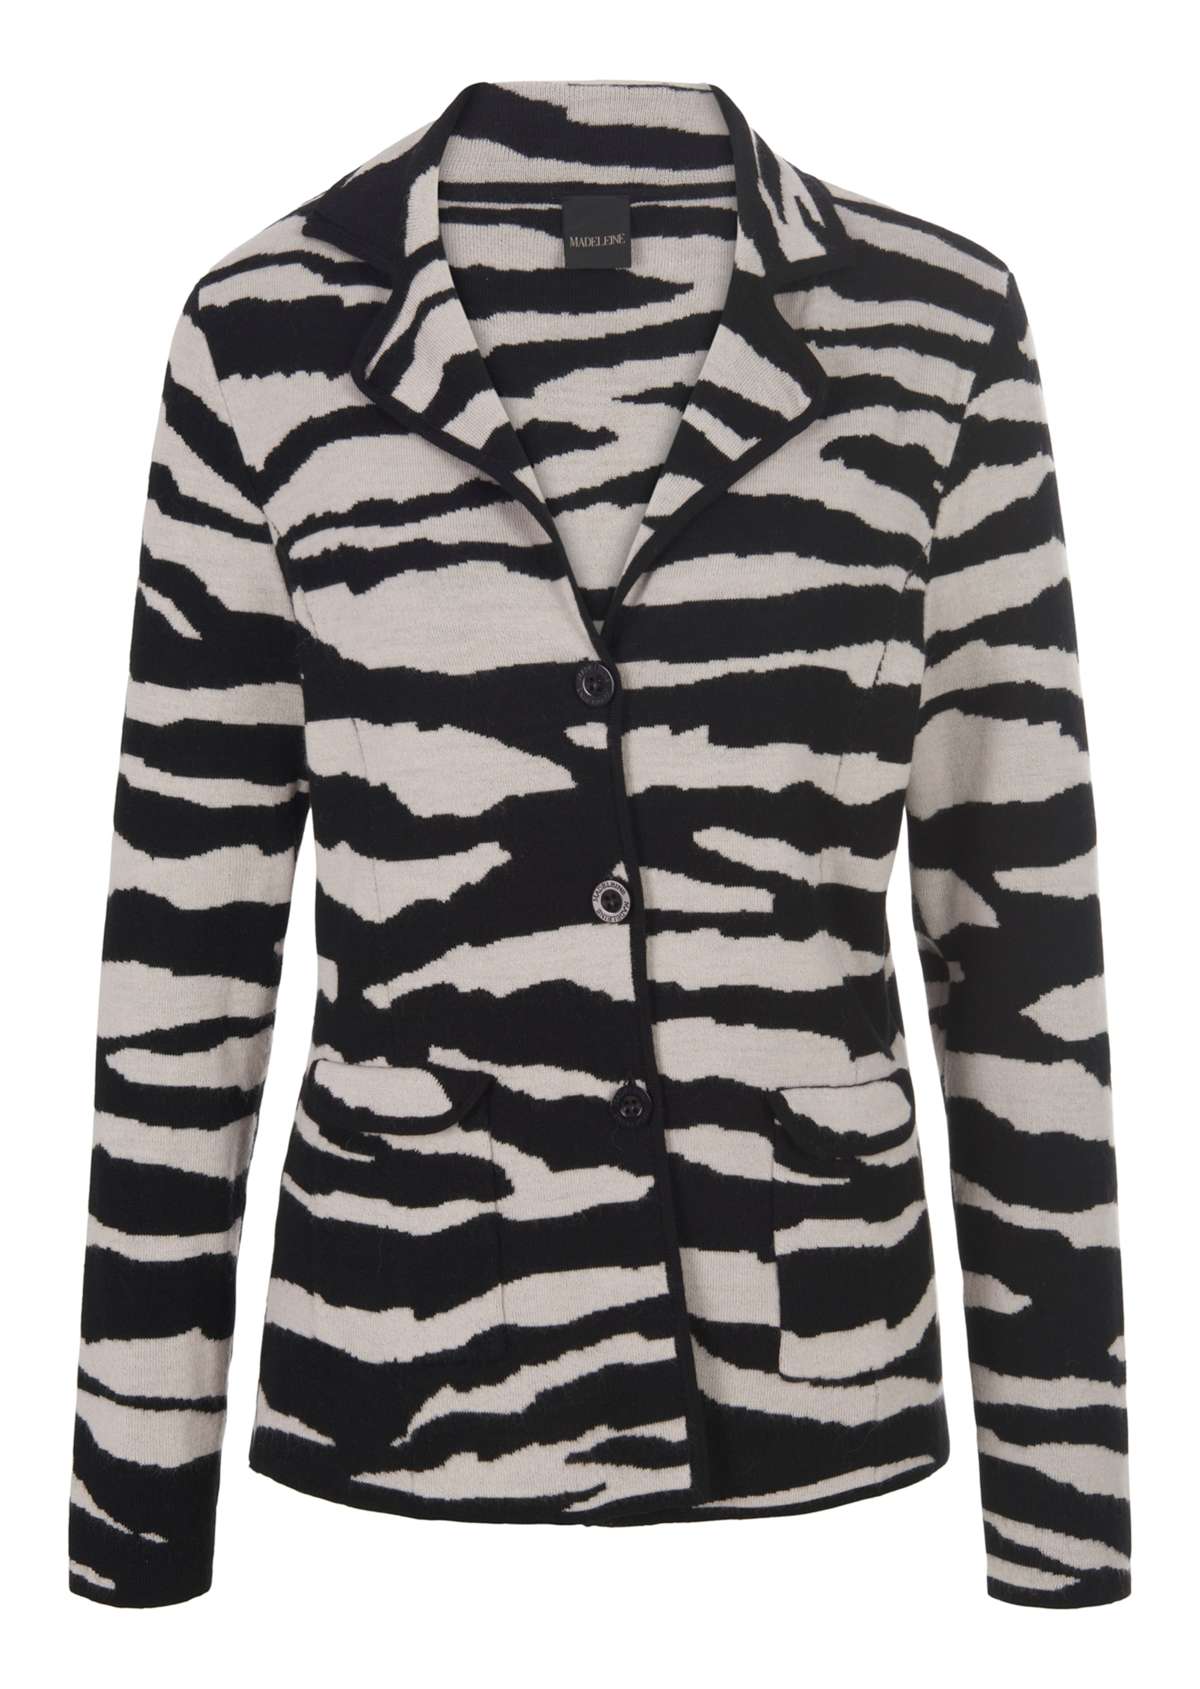 Жаккардовый пиджак с узором «зебра».